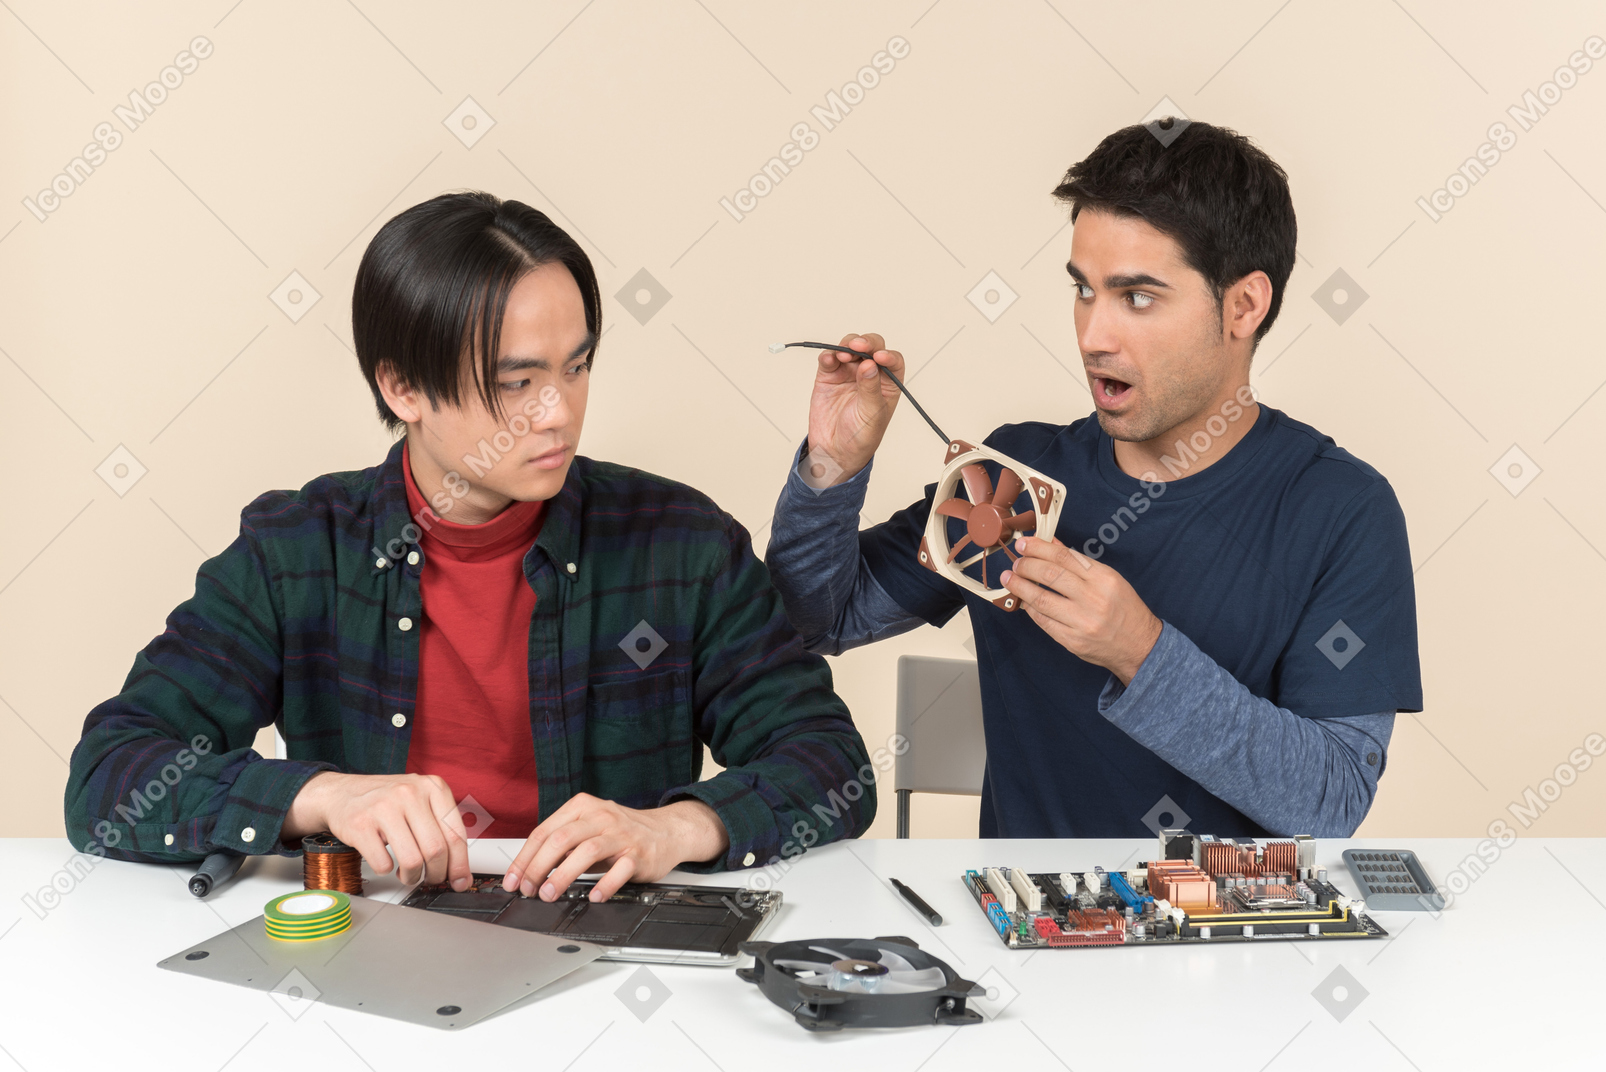 Deux jeunes geeks assis à la table avec des détails et l'un d'entre eux a l'air surpris